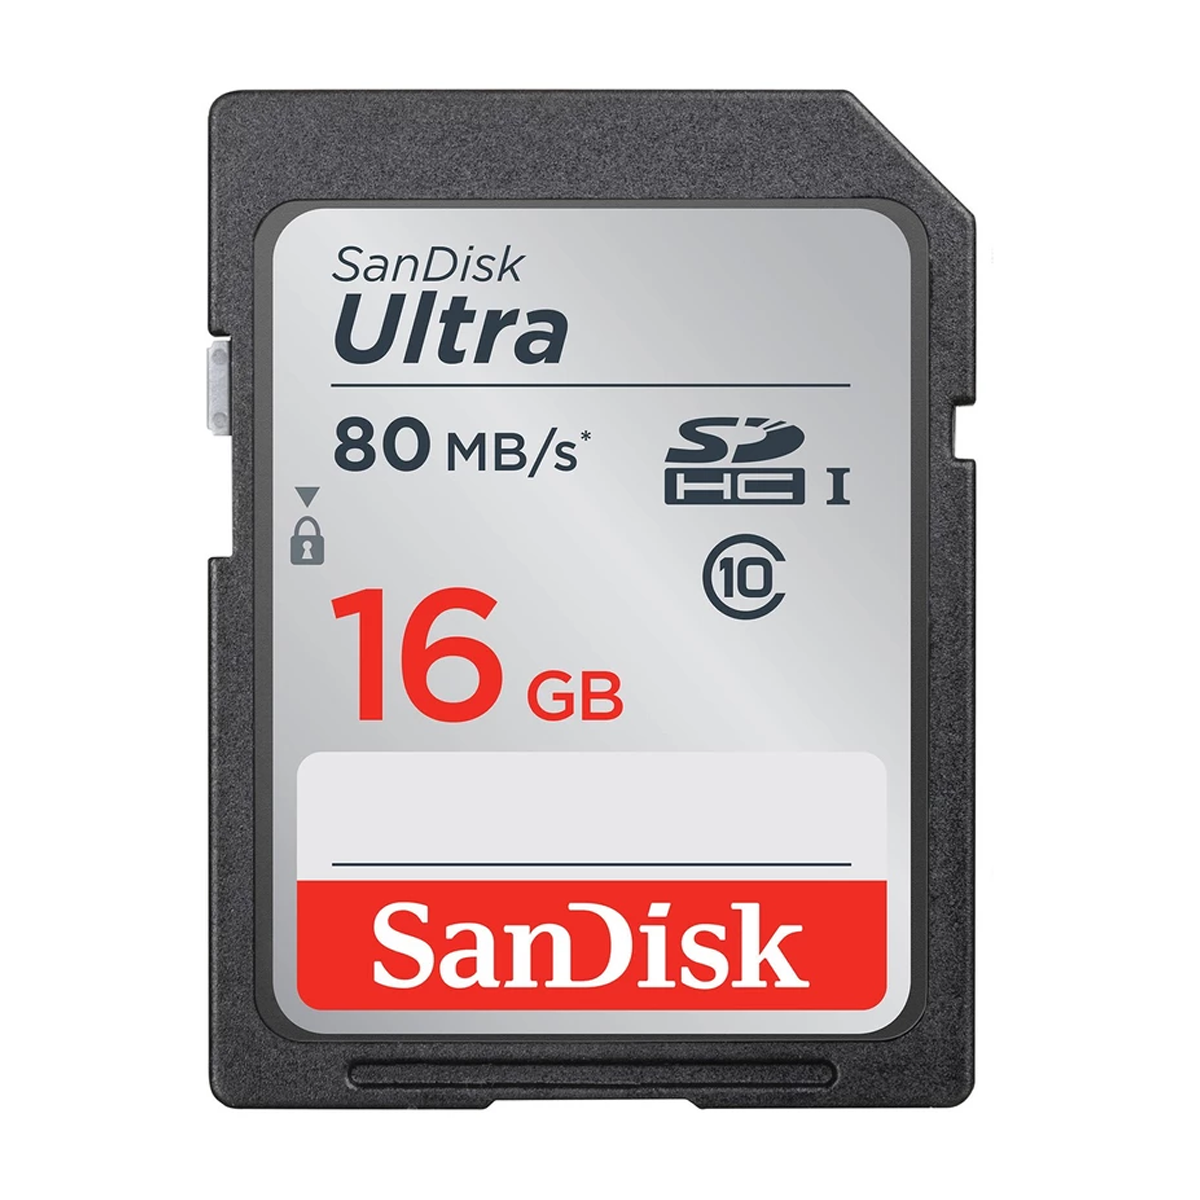 کارت حافظه SDHC سن دیسک مدل Ultra کلاس 10 استاندارد UHS-I U1 سرعت 80MBps ظرفیت 16 گیگابایت-small-image